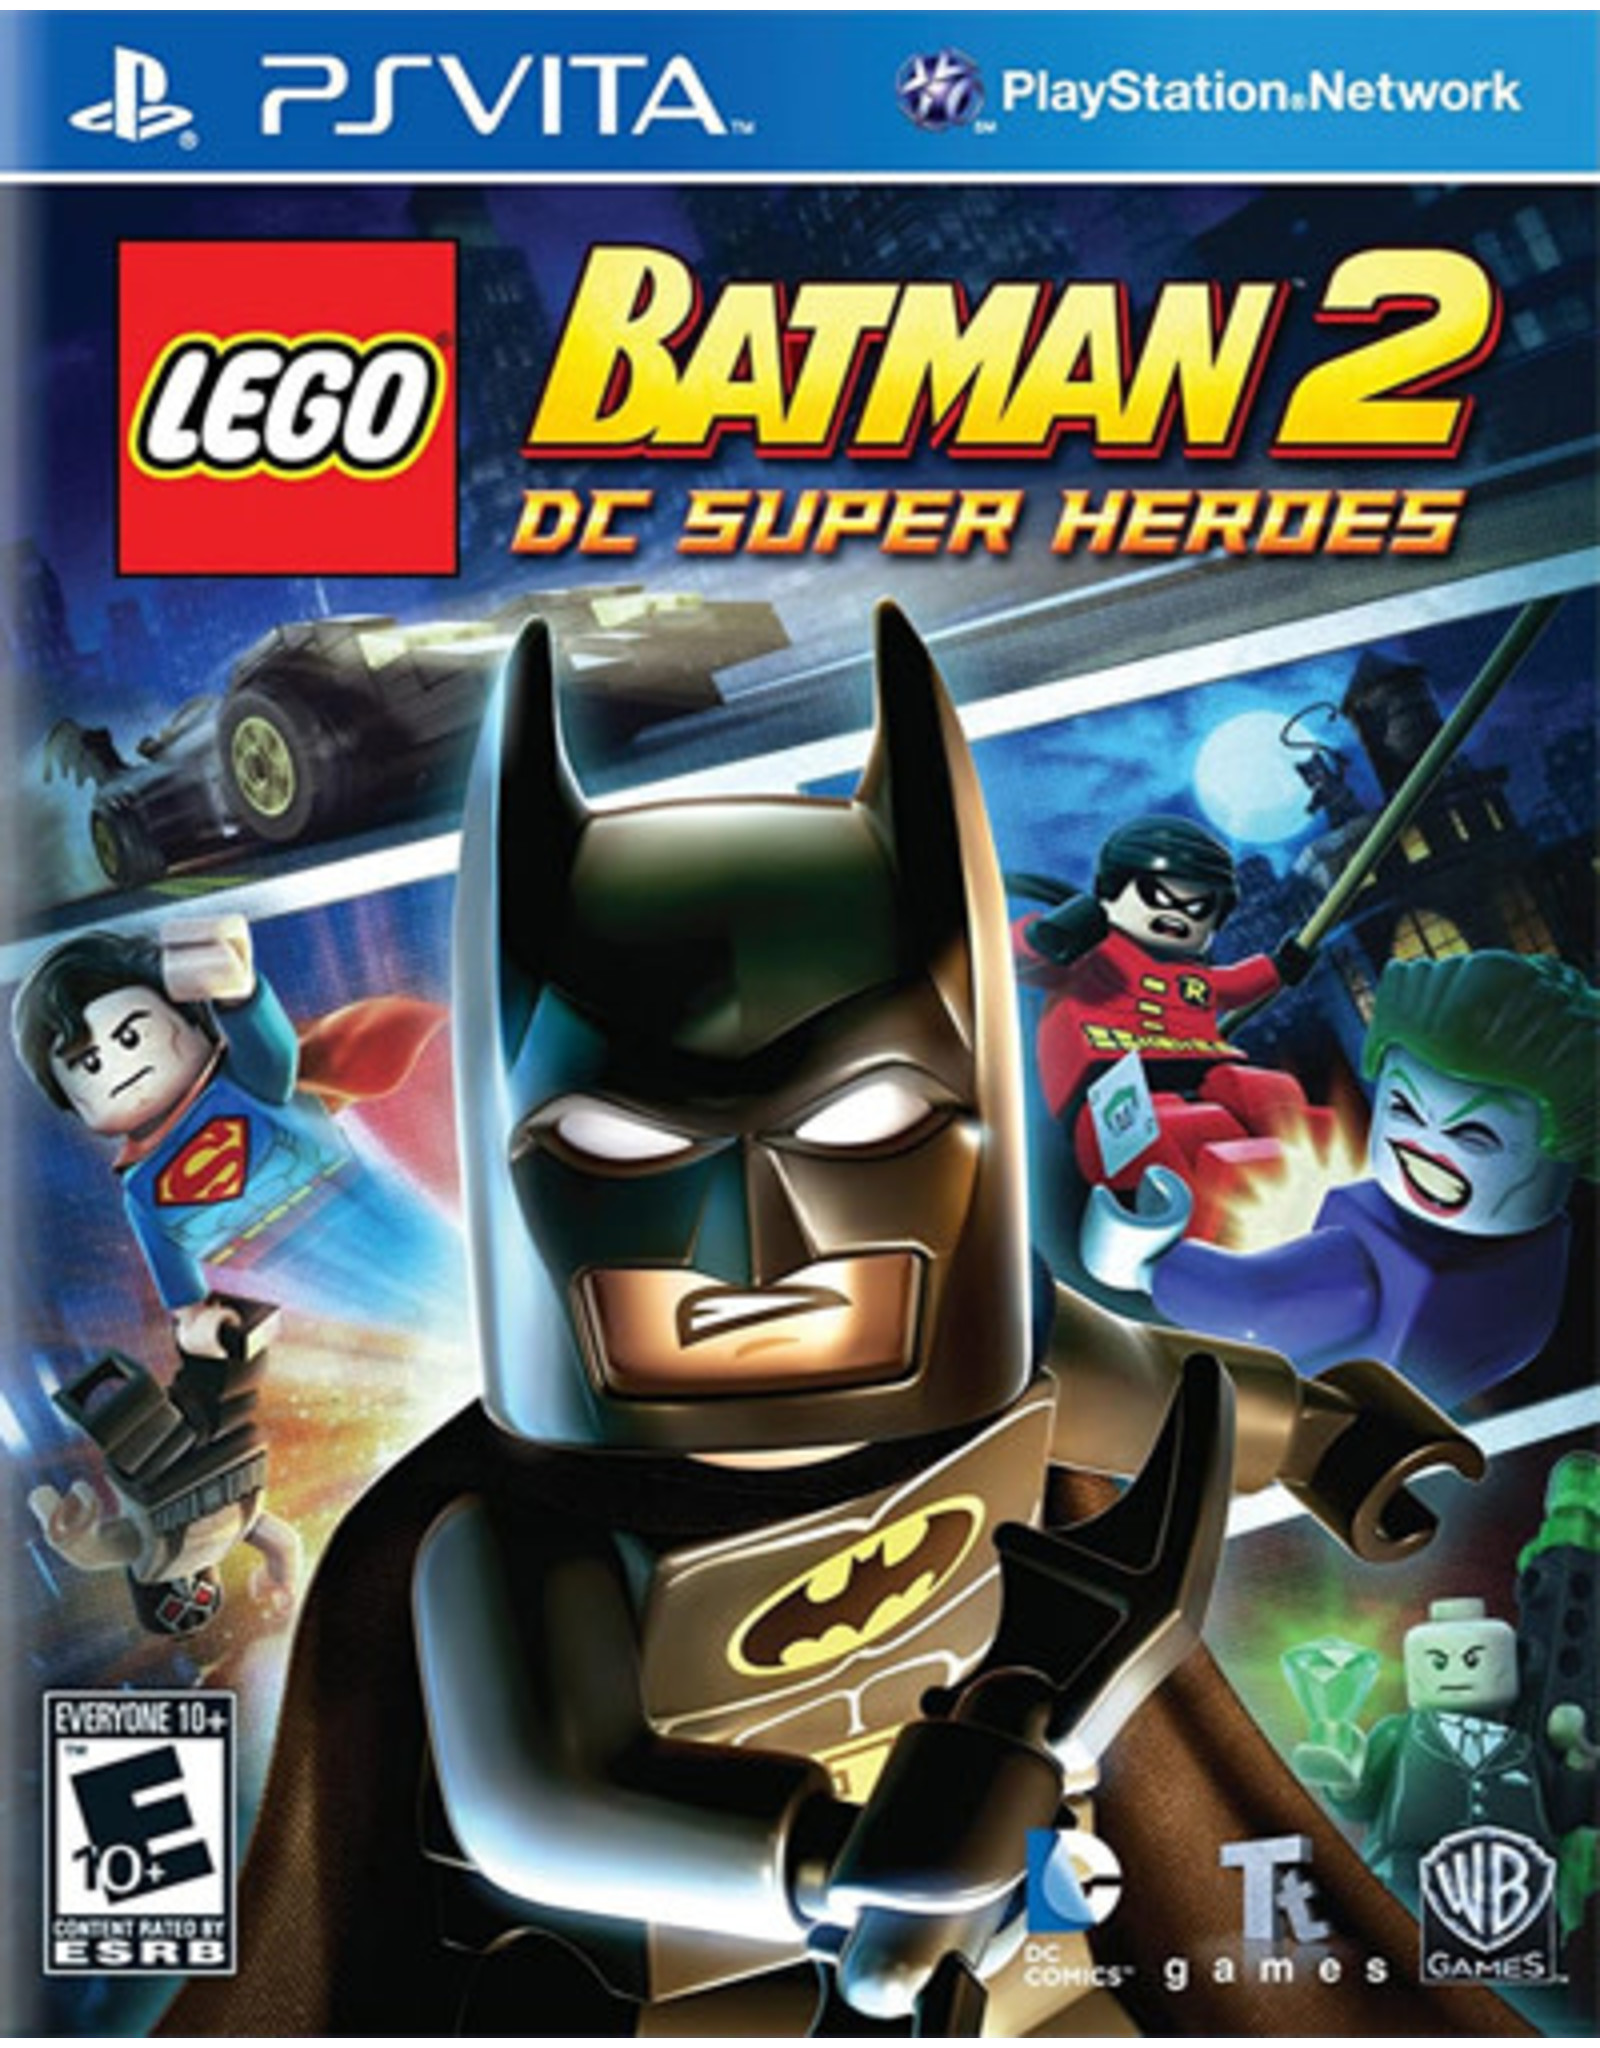 Playstation Vita Lego Batman 2: DC Super Heroes (CiB)